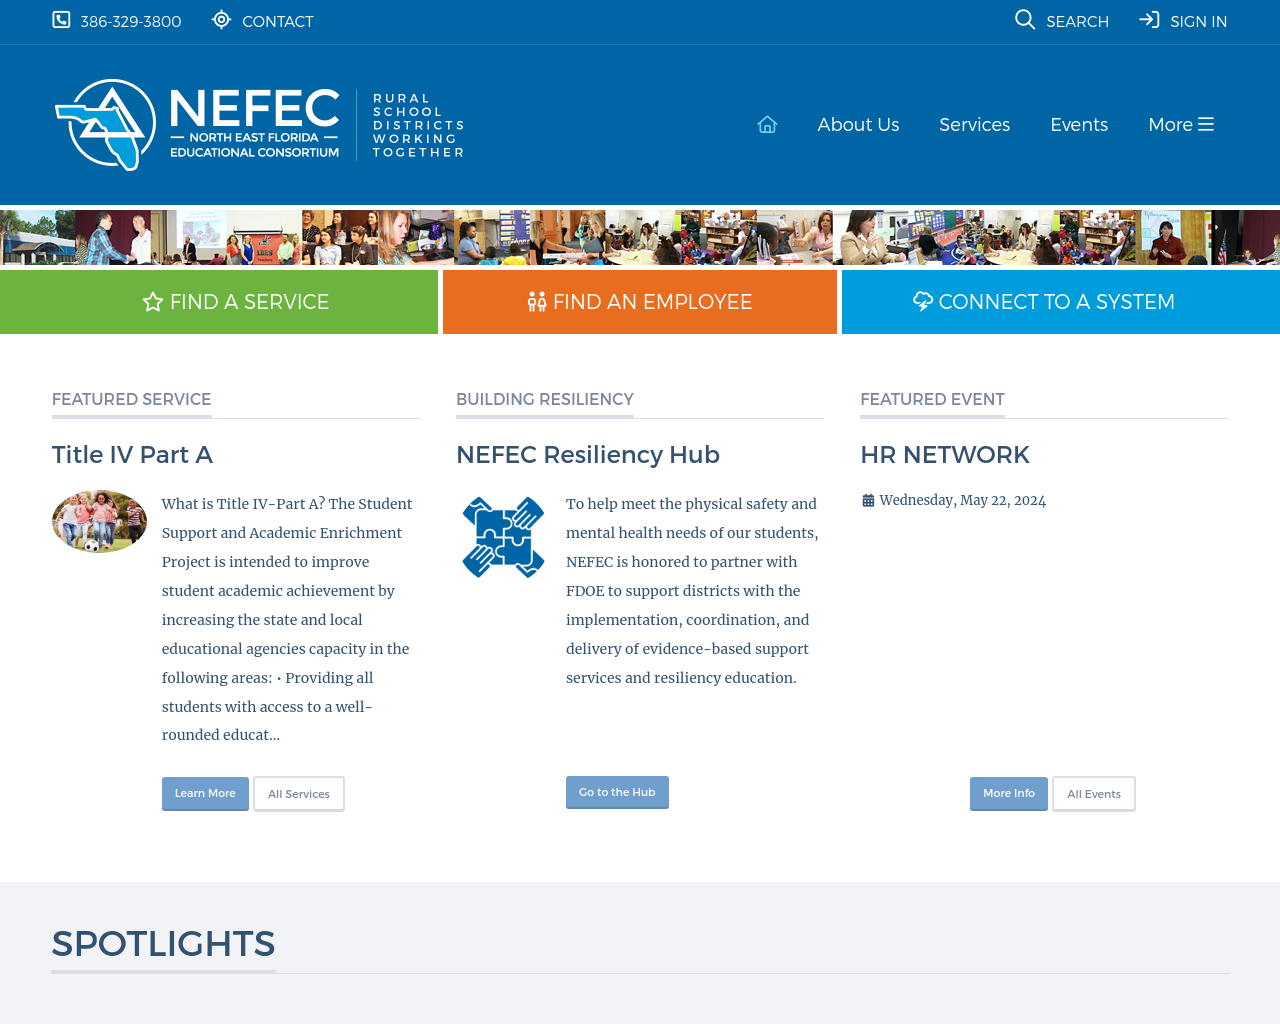 nefec.org